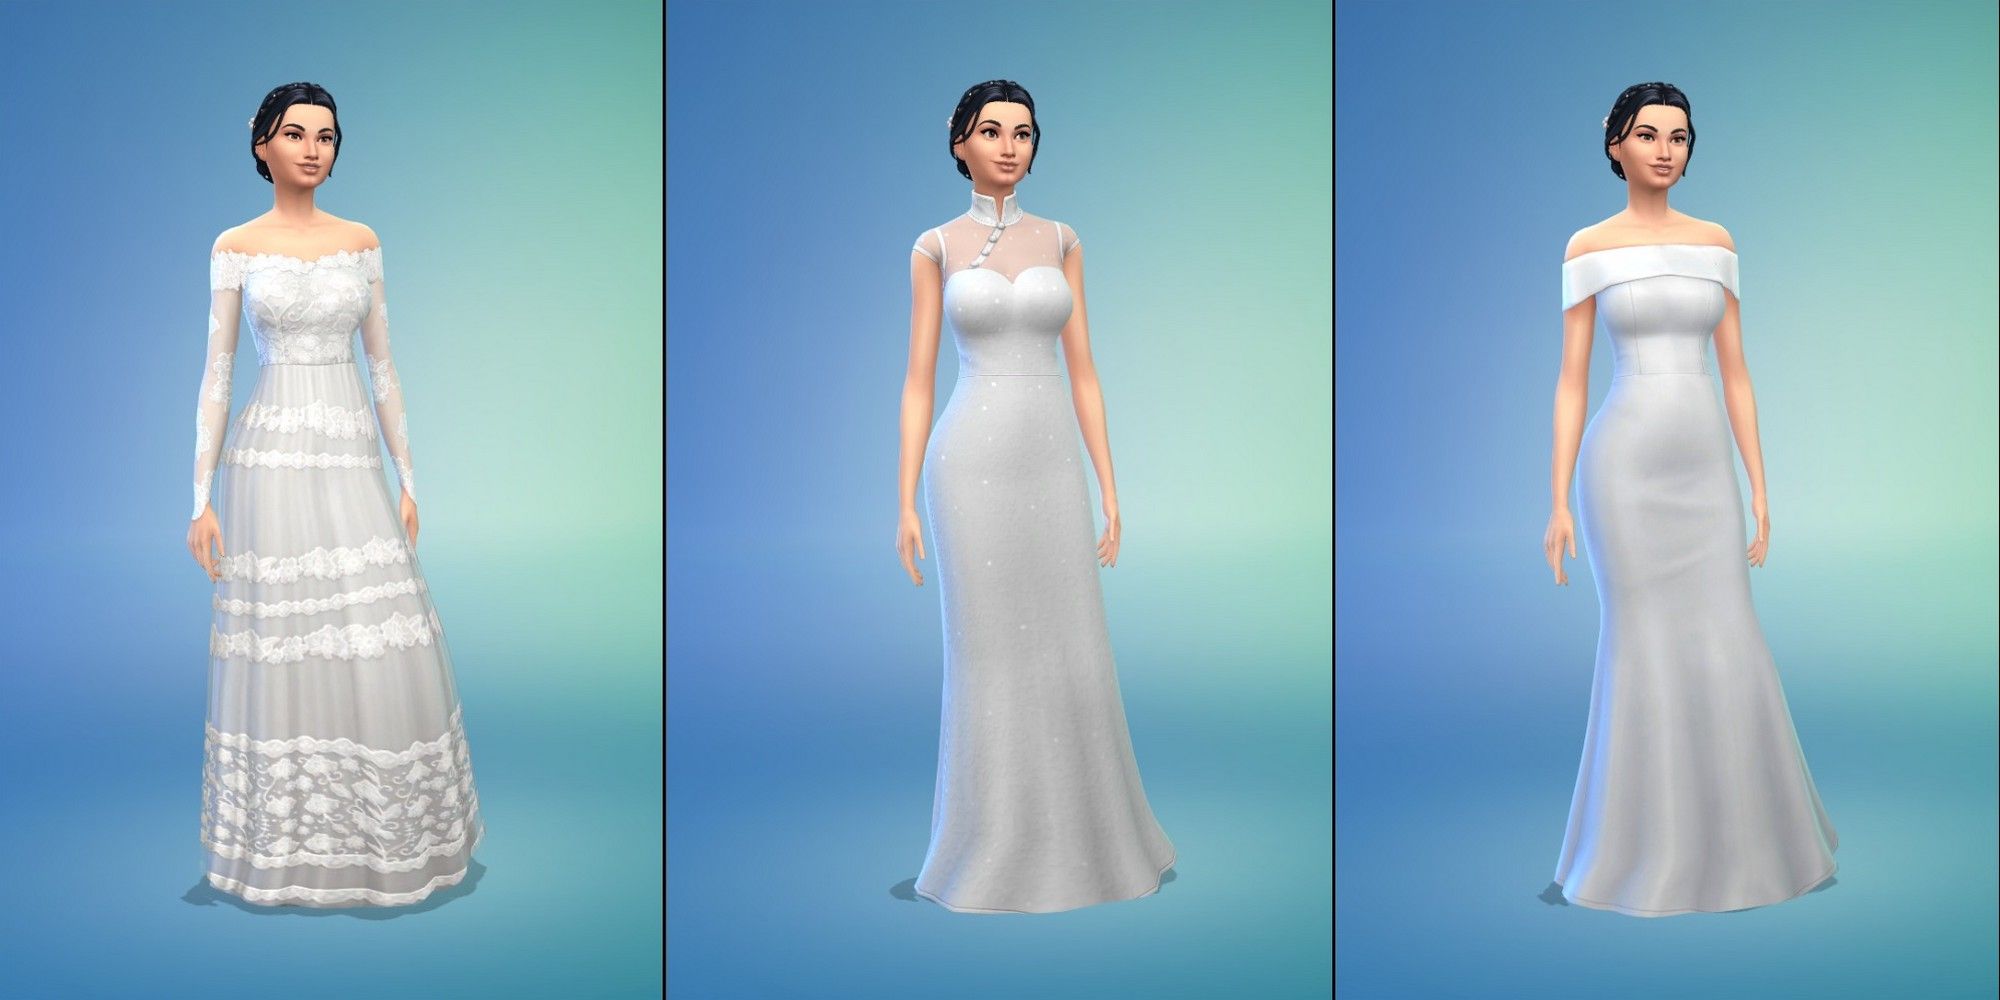 Sims 4 Wedding Dress Assortment Feature